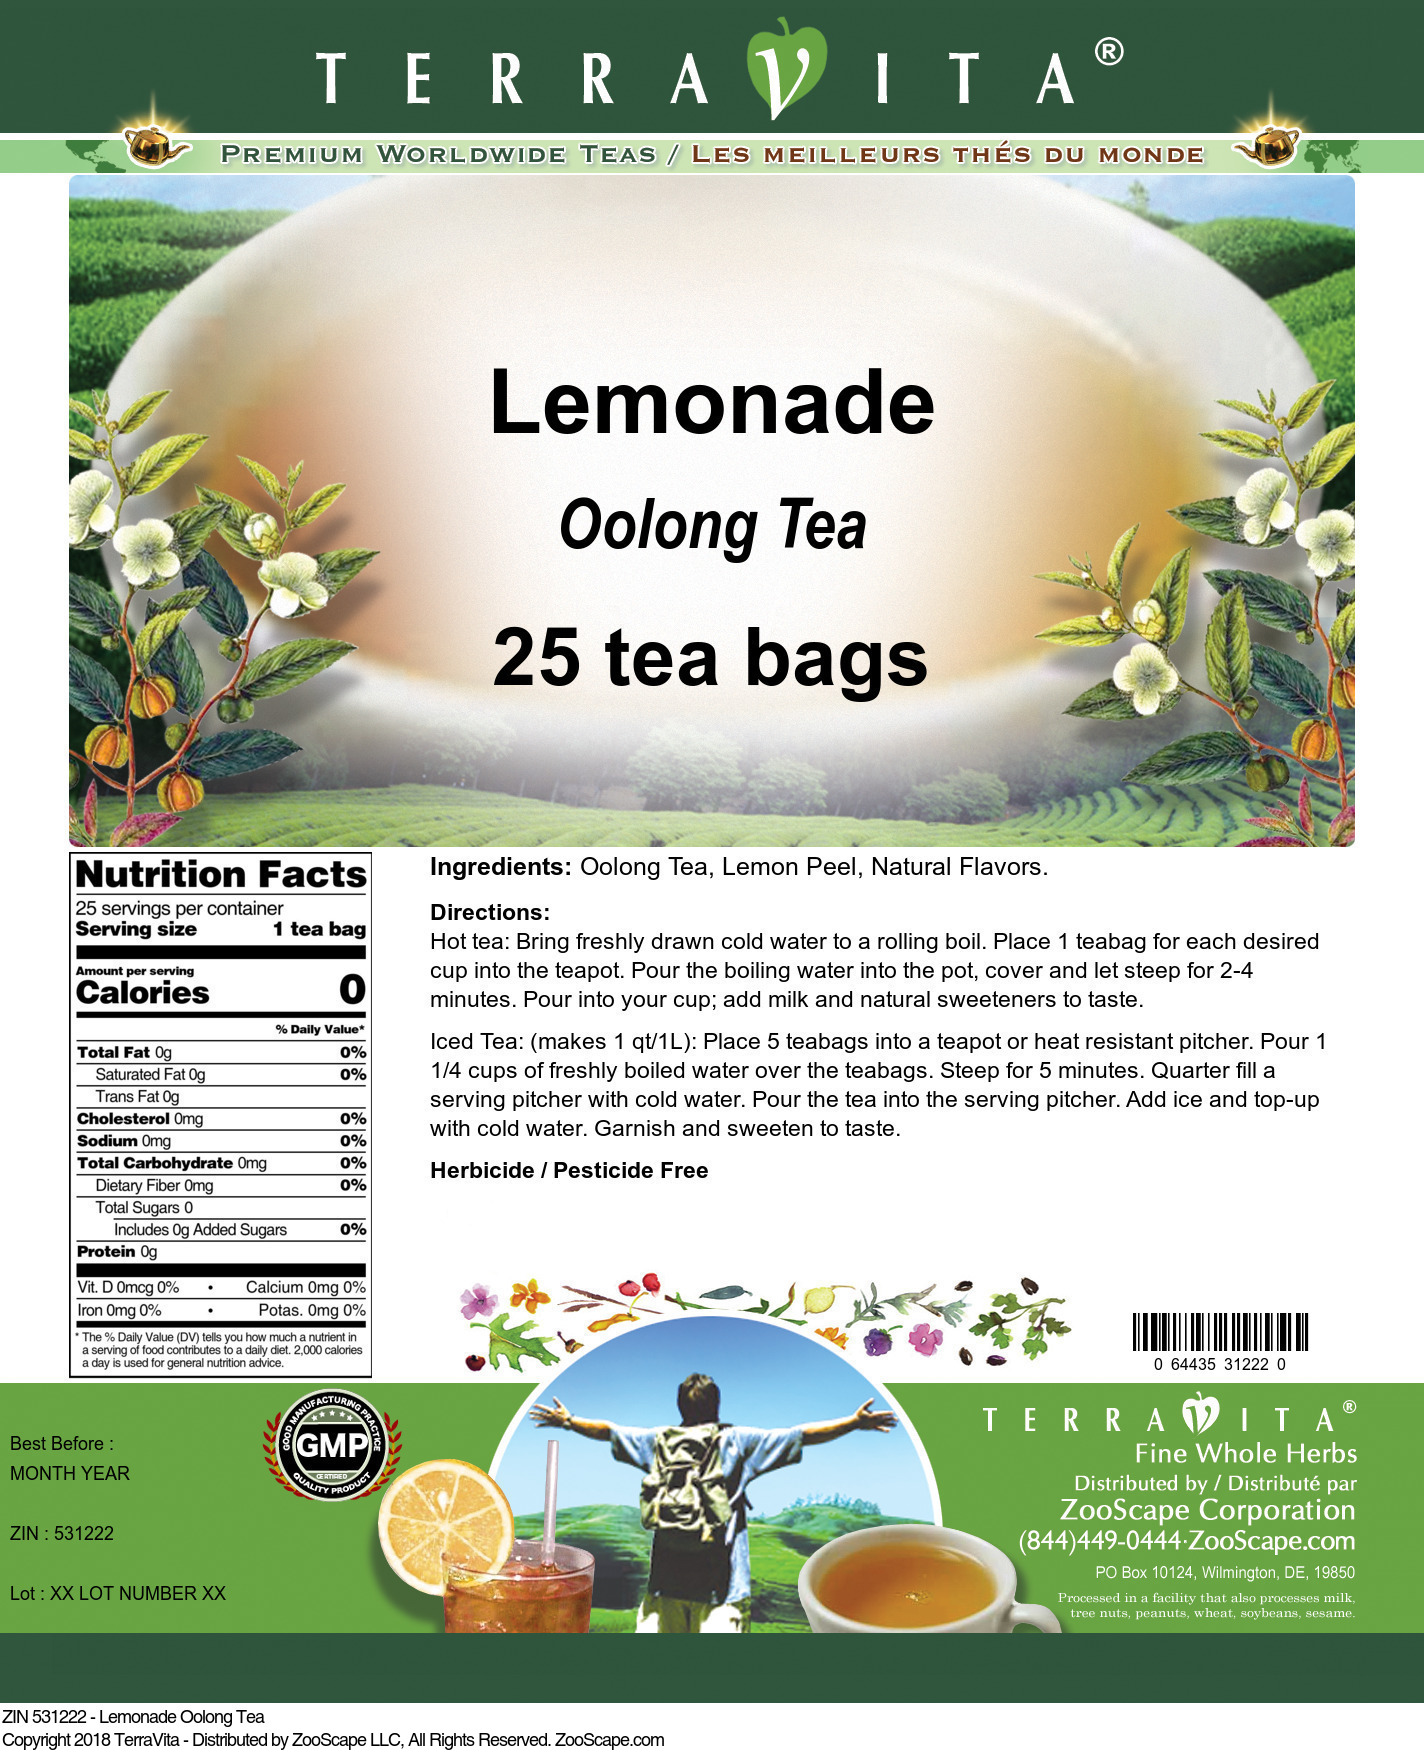 Lemonade Oolong Tea - Label